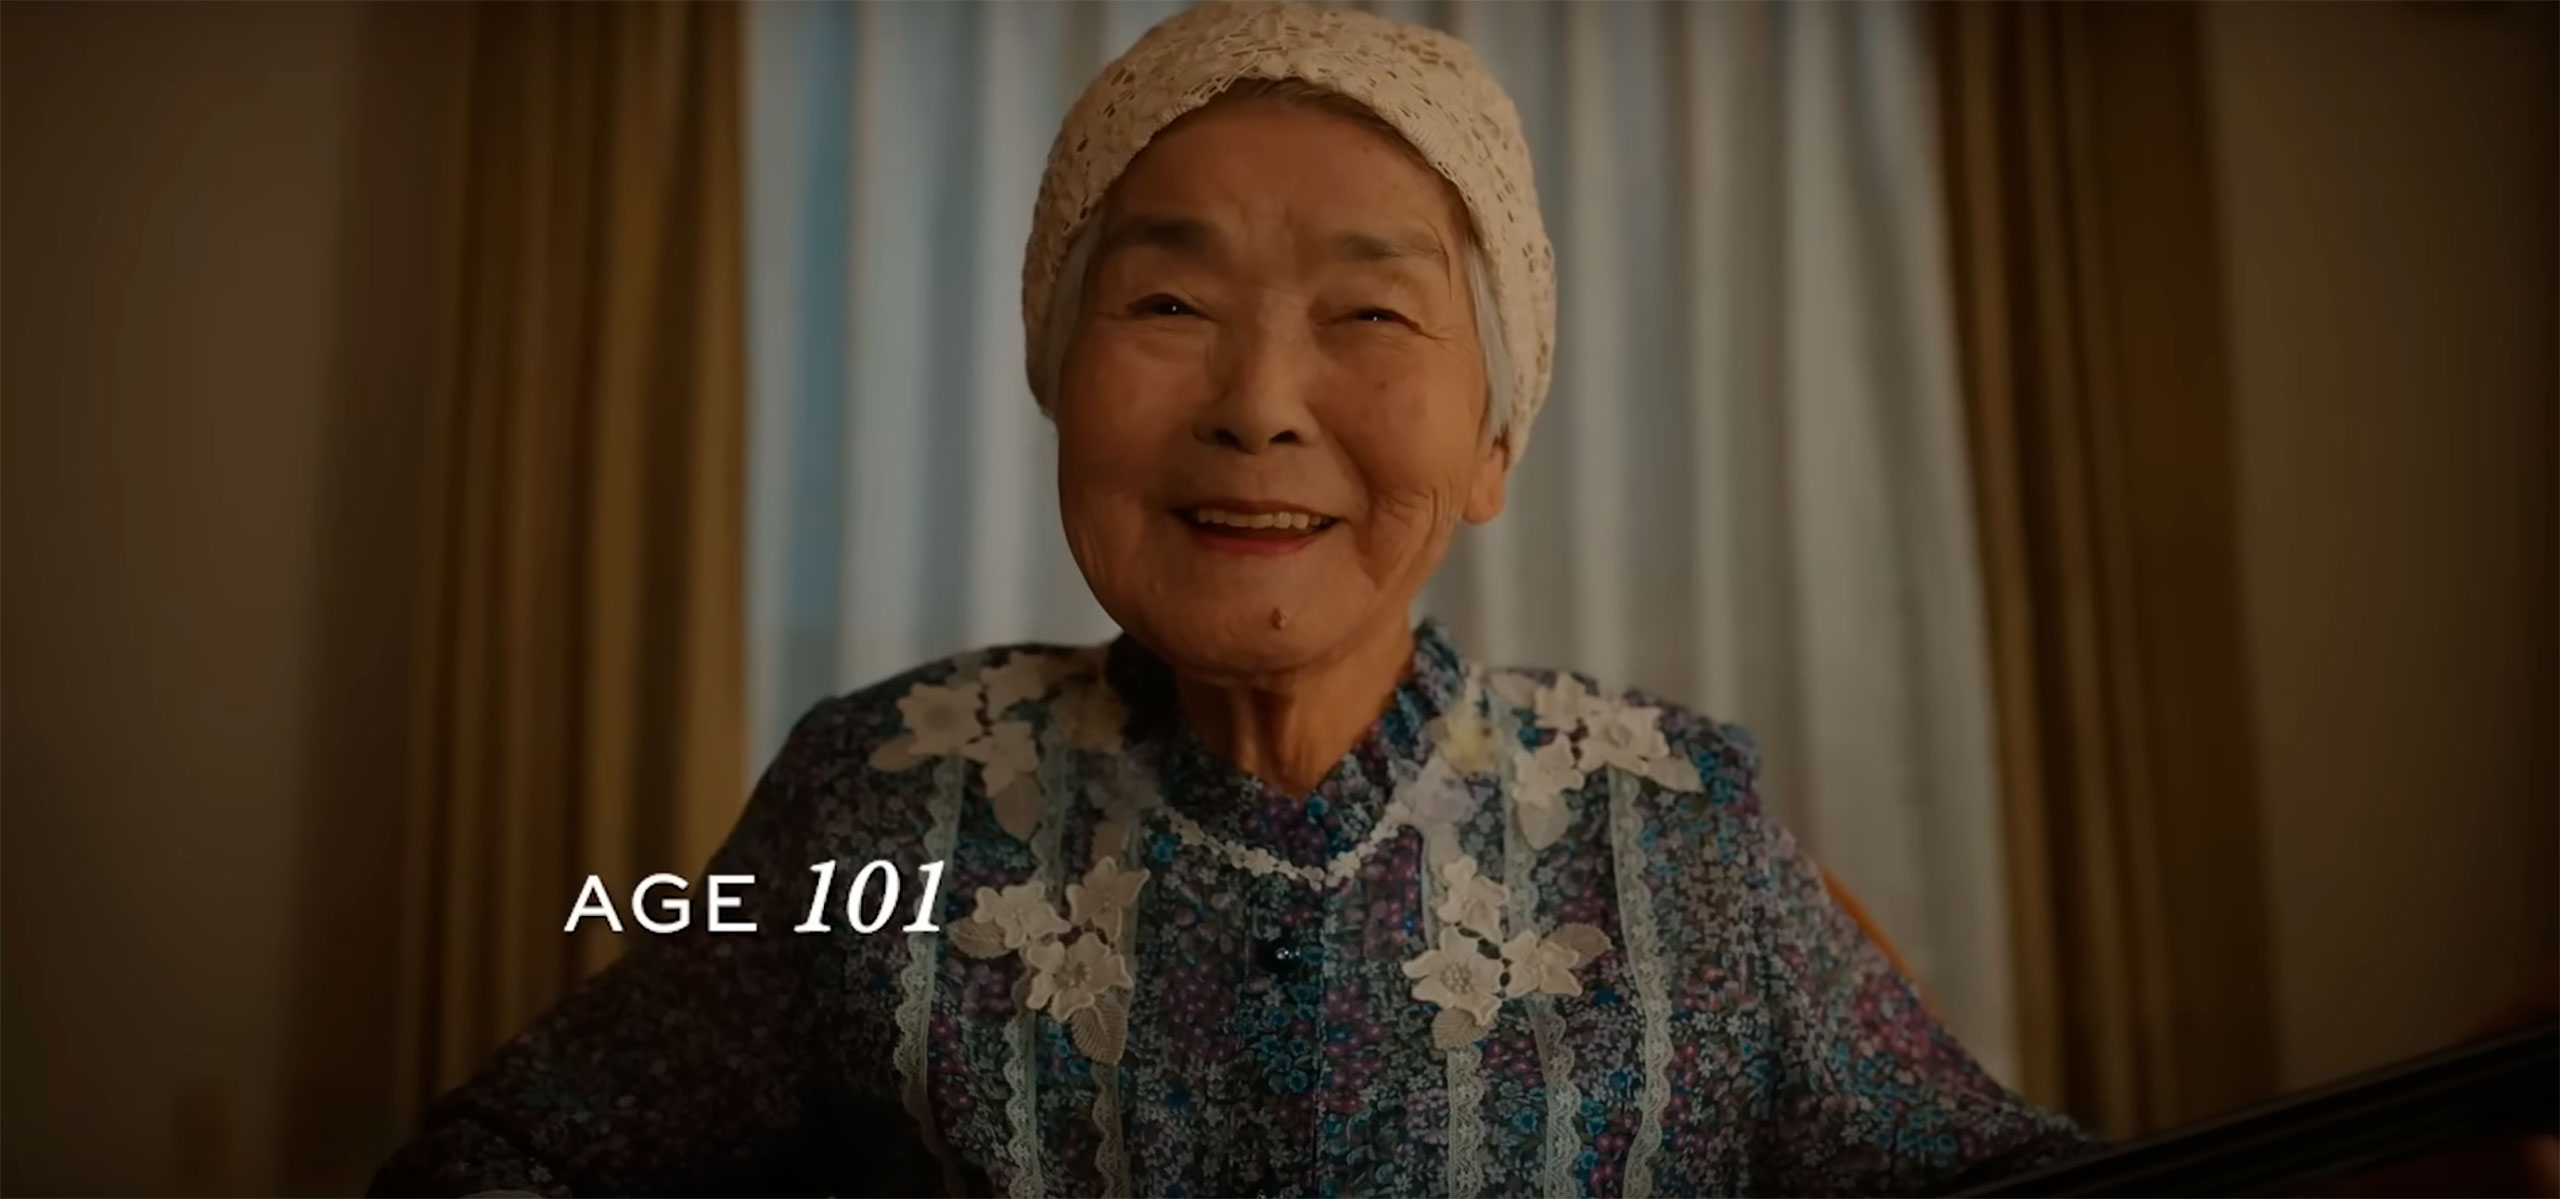 Centenárias: mulheres contam segredos para chegar aos 100 anos